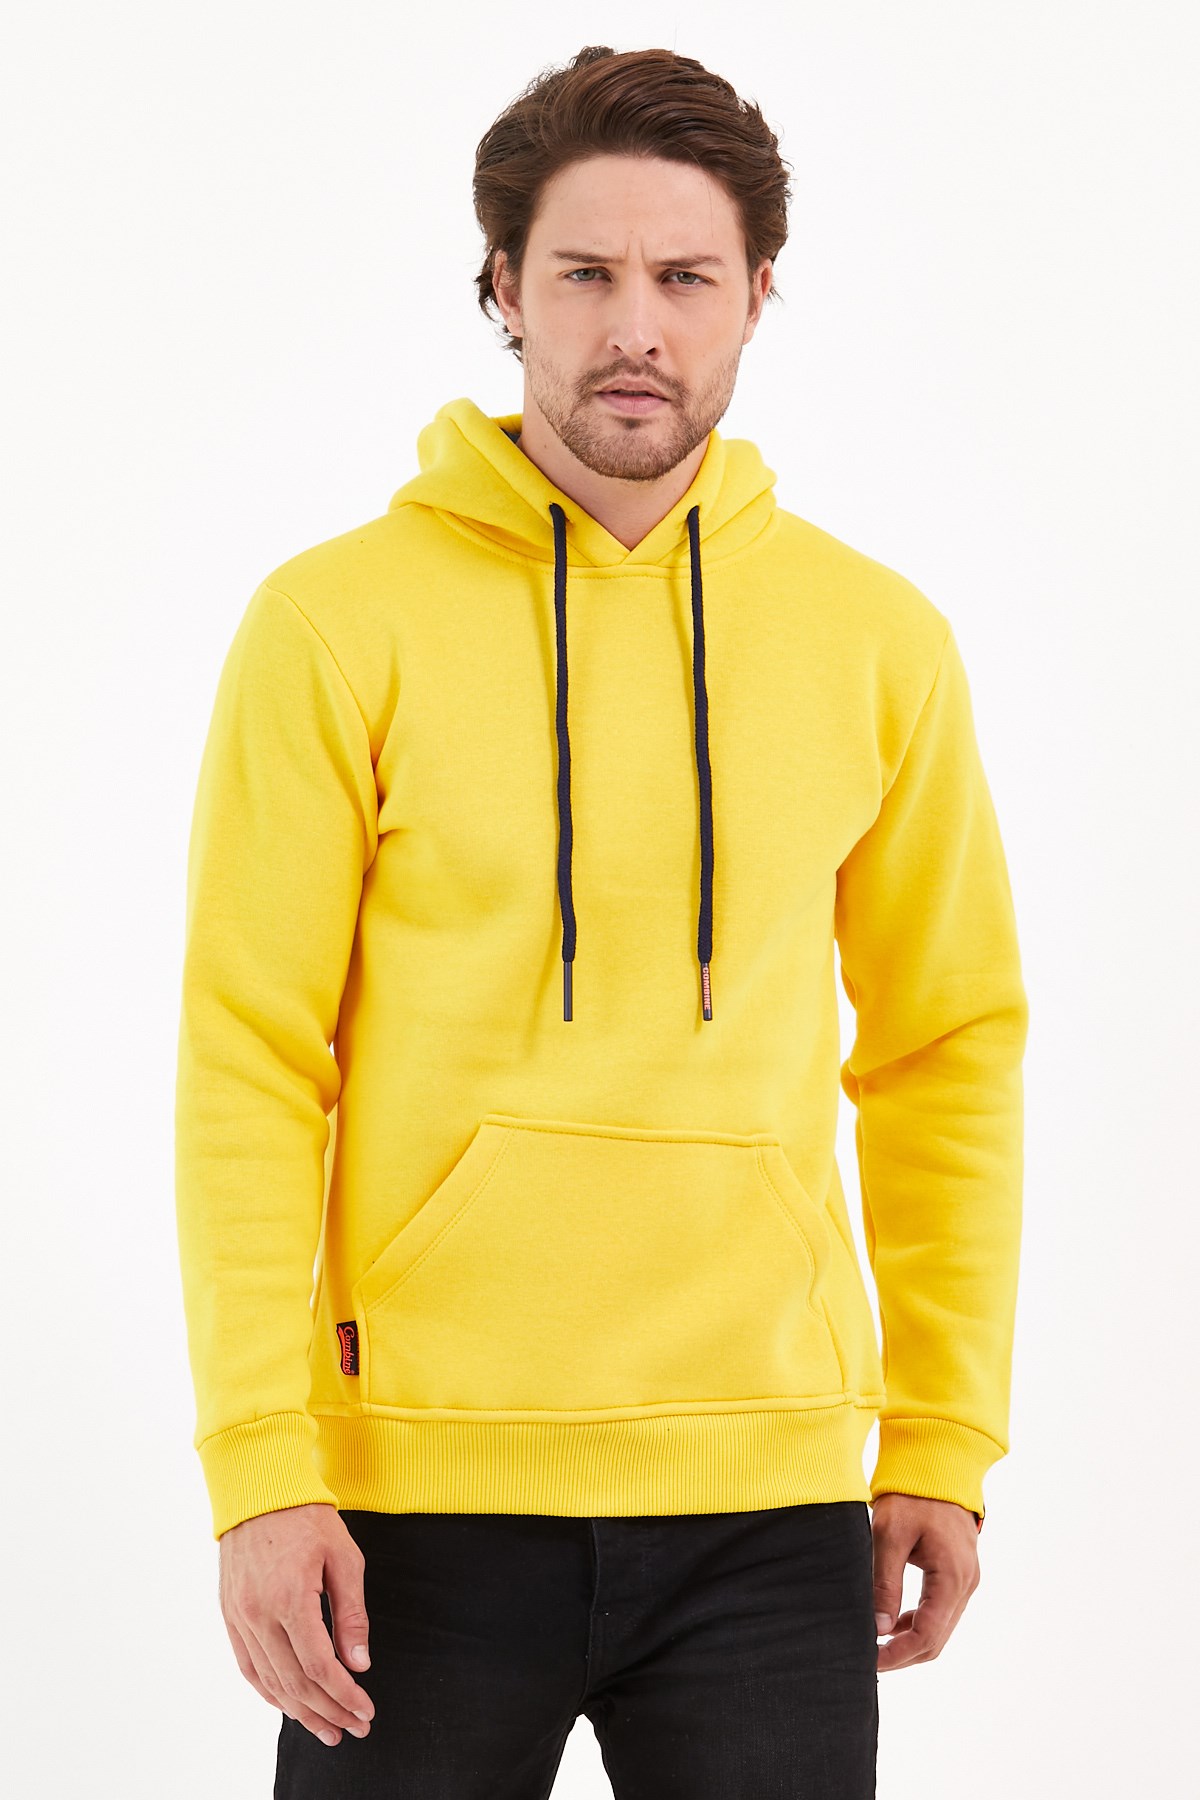 Açık Sarı Renk Kanguru Cepli Kapüşonlu Sweatshirt Fiyatları